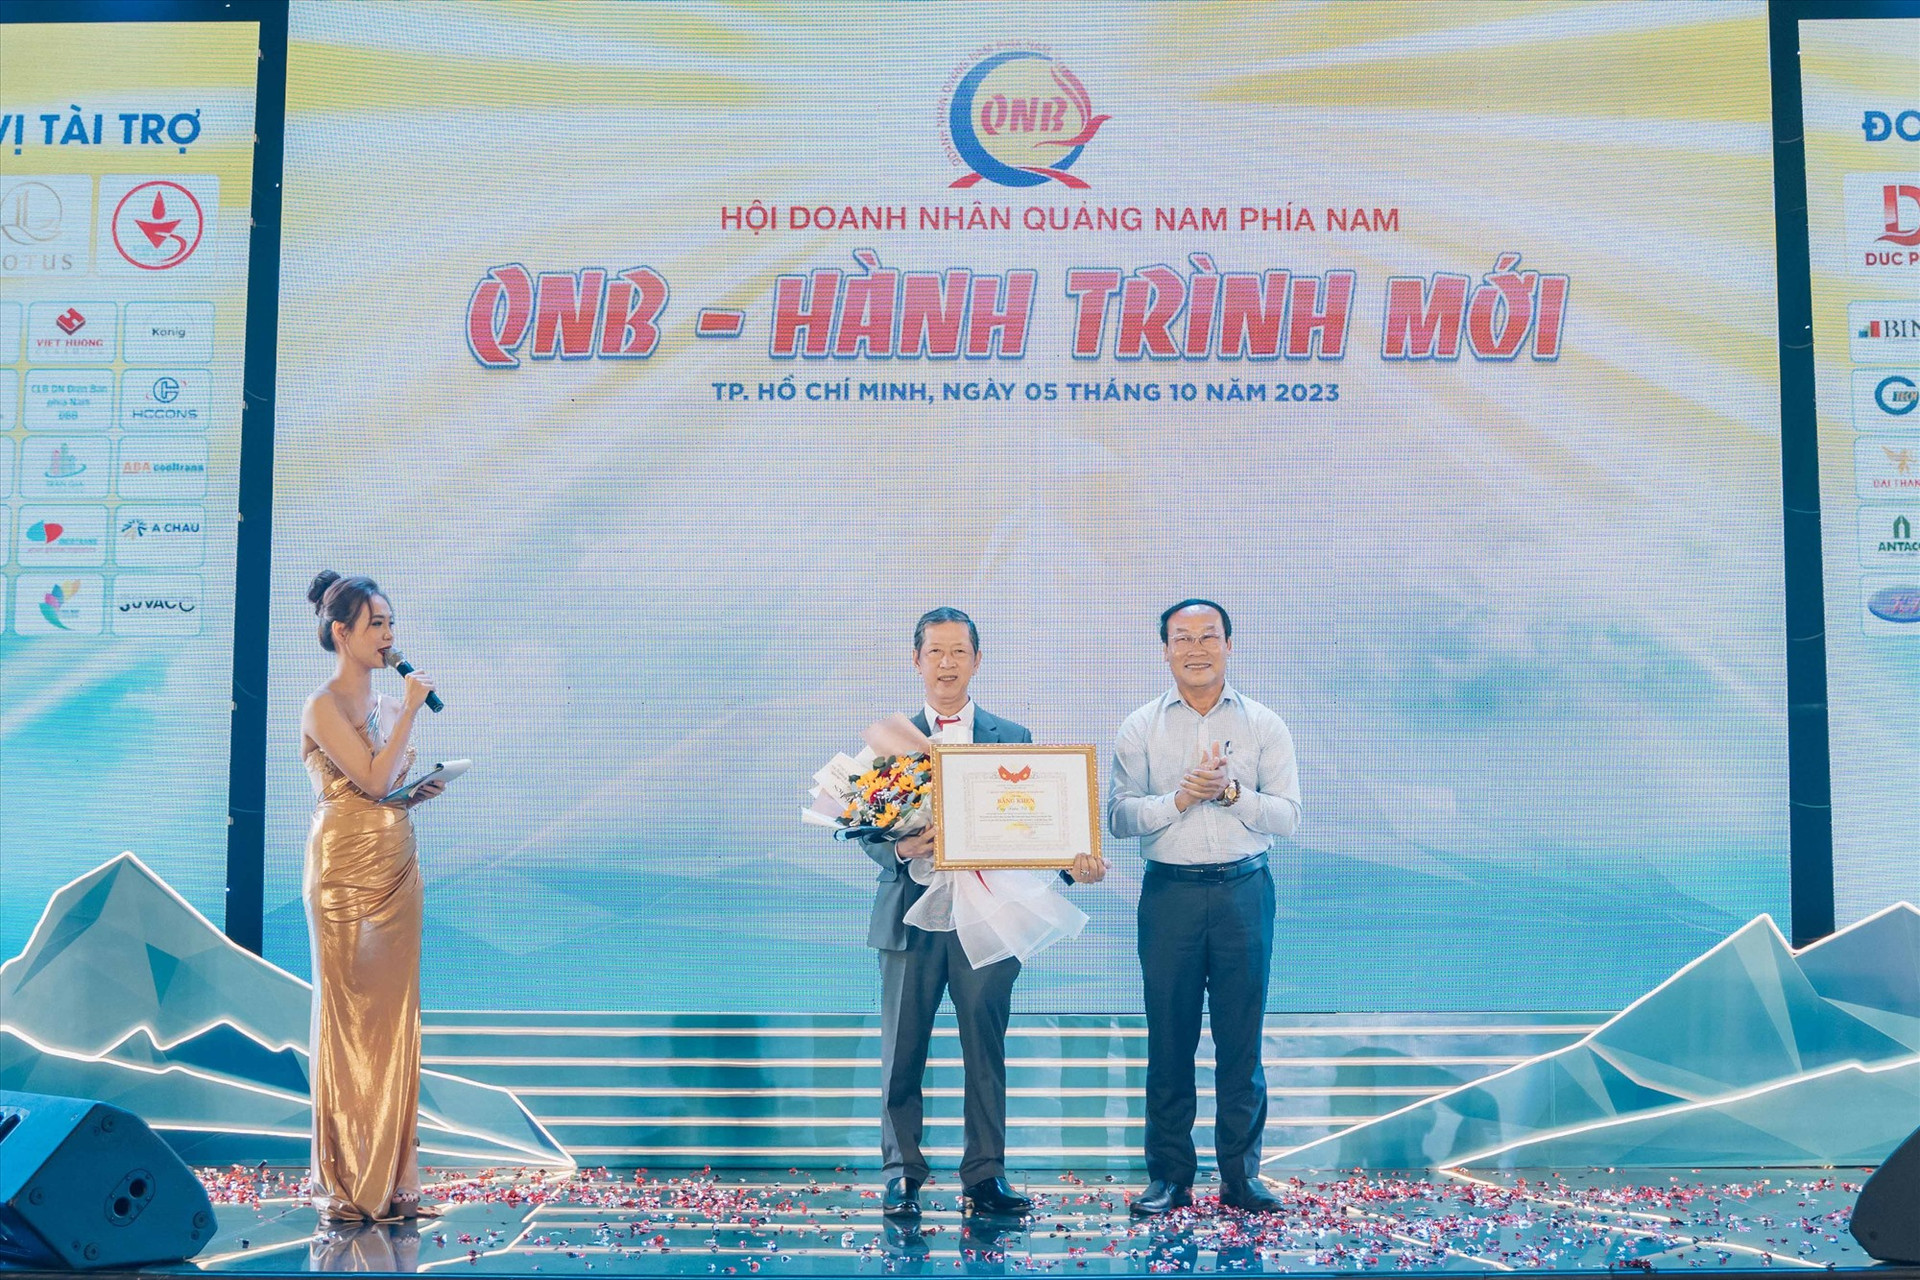 Chủ tịch Ủy ban MTTQ Việt Nam tỉnh Võ Xuân Ca trao Bằng khen cho ông Trần Vũ Lê - nguyên Chủ tịch QNB nhiệm kỳ 2019 - 2023.